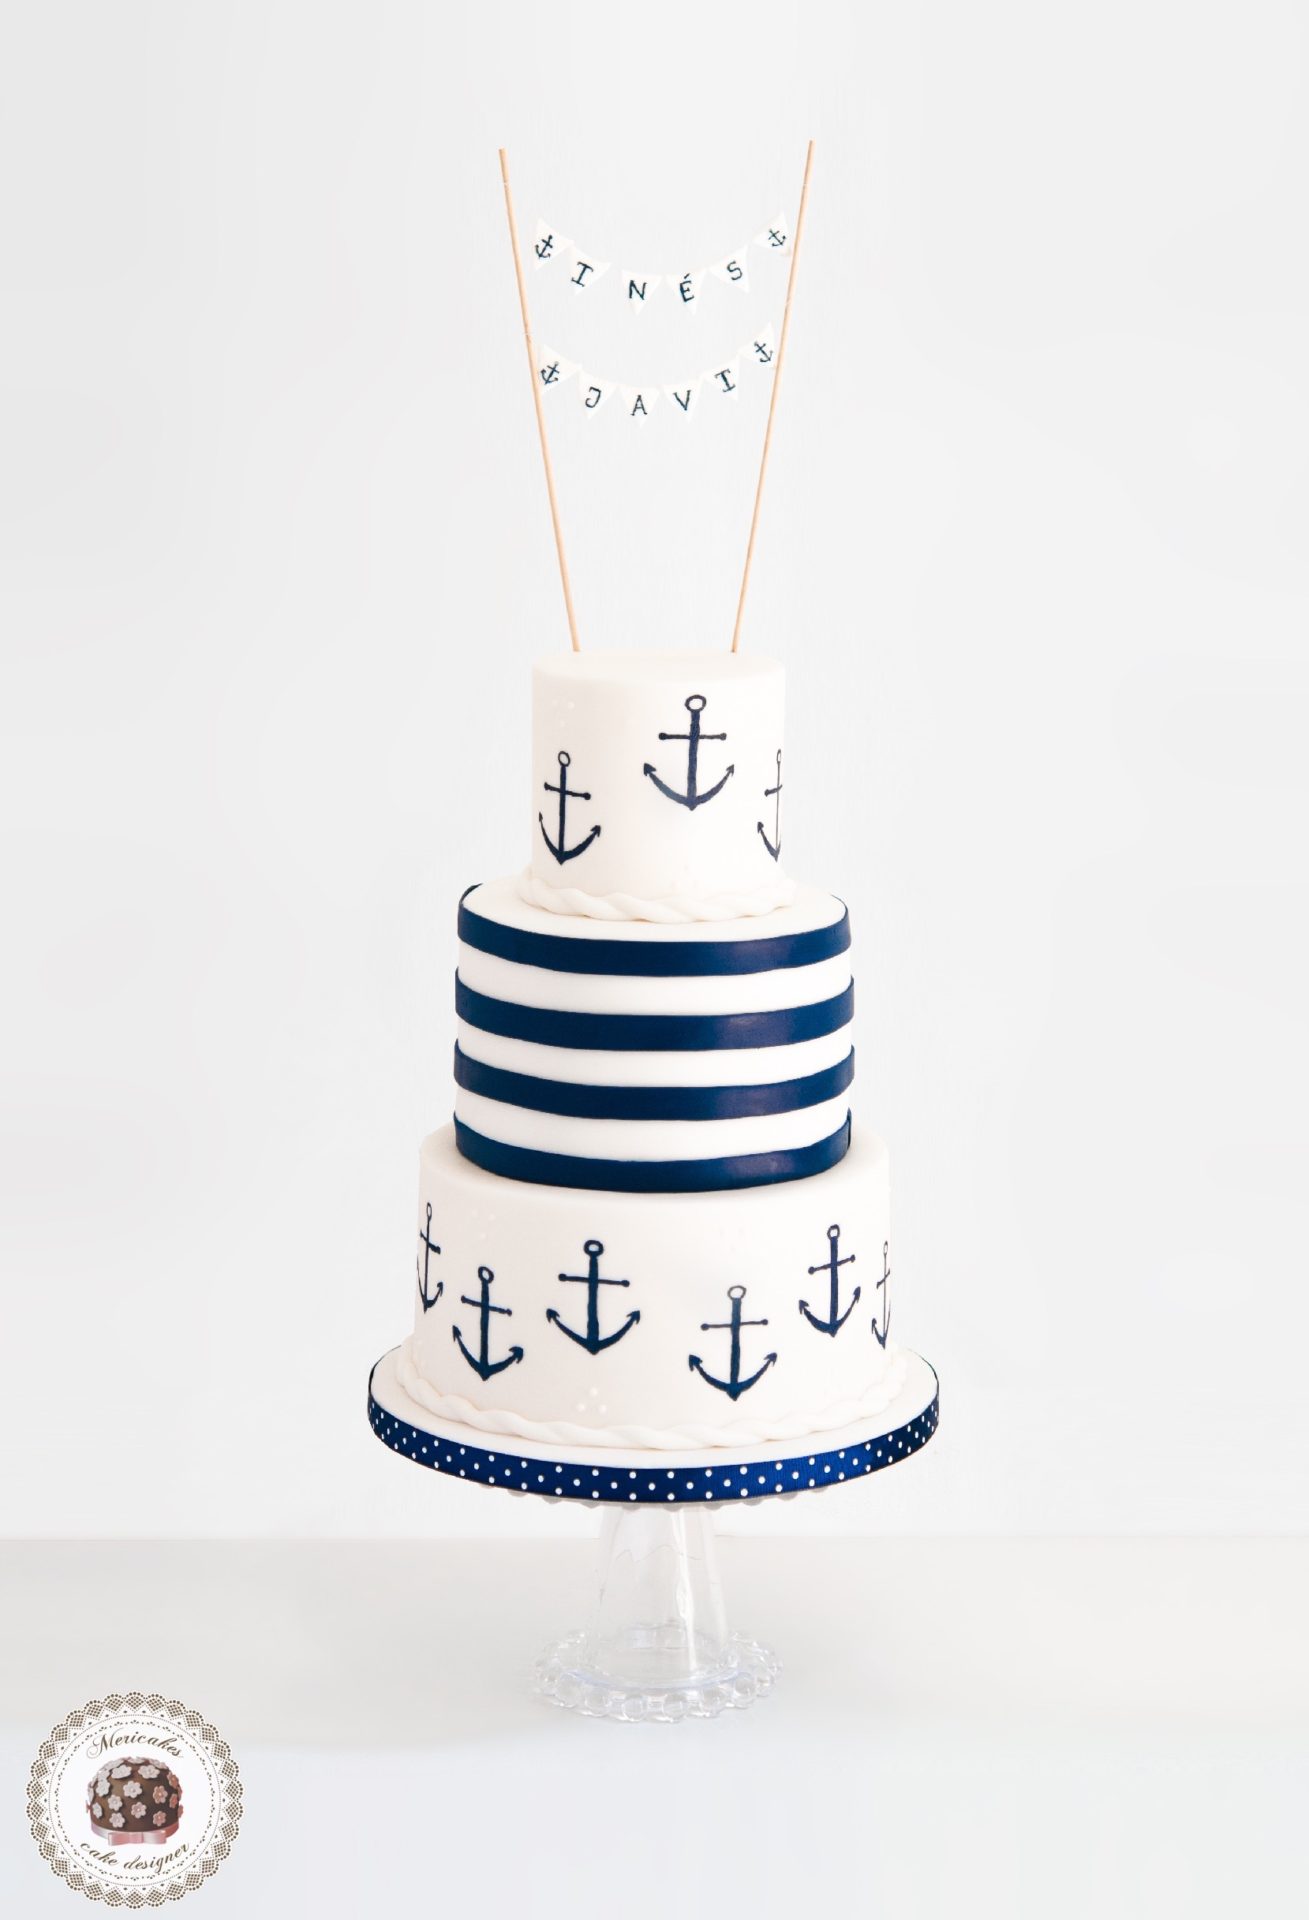 sailor-wedding-cake-tarta-de-boda-tartas-barcelona-tartas-decoradas-anclas-anchor-mericakes-fondant